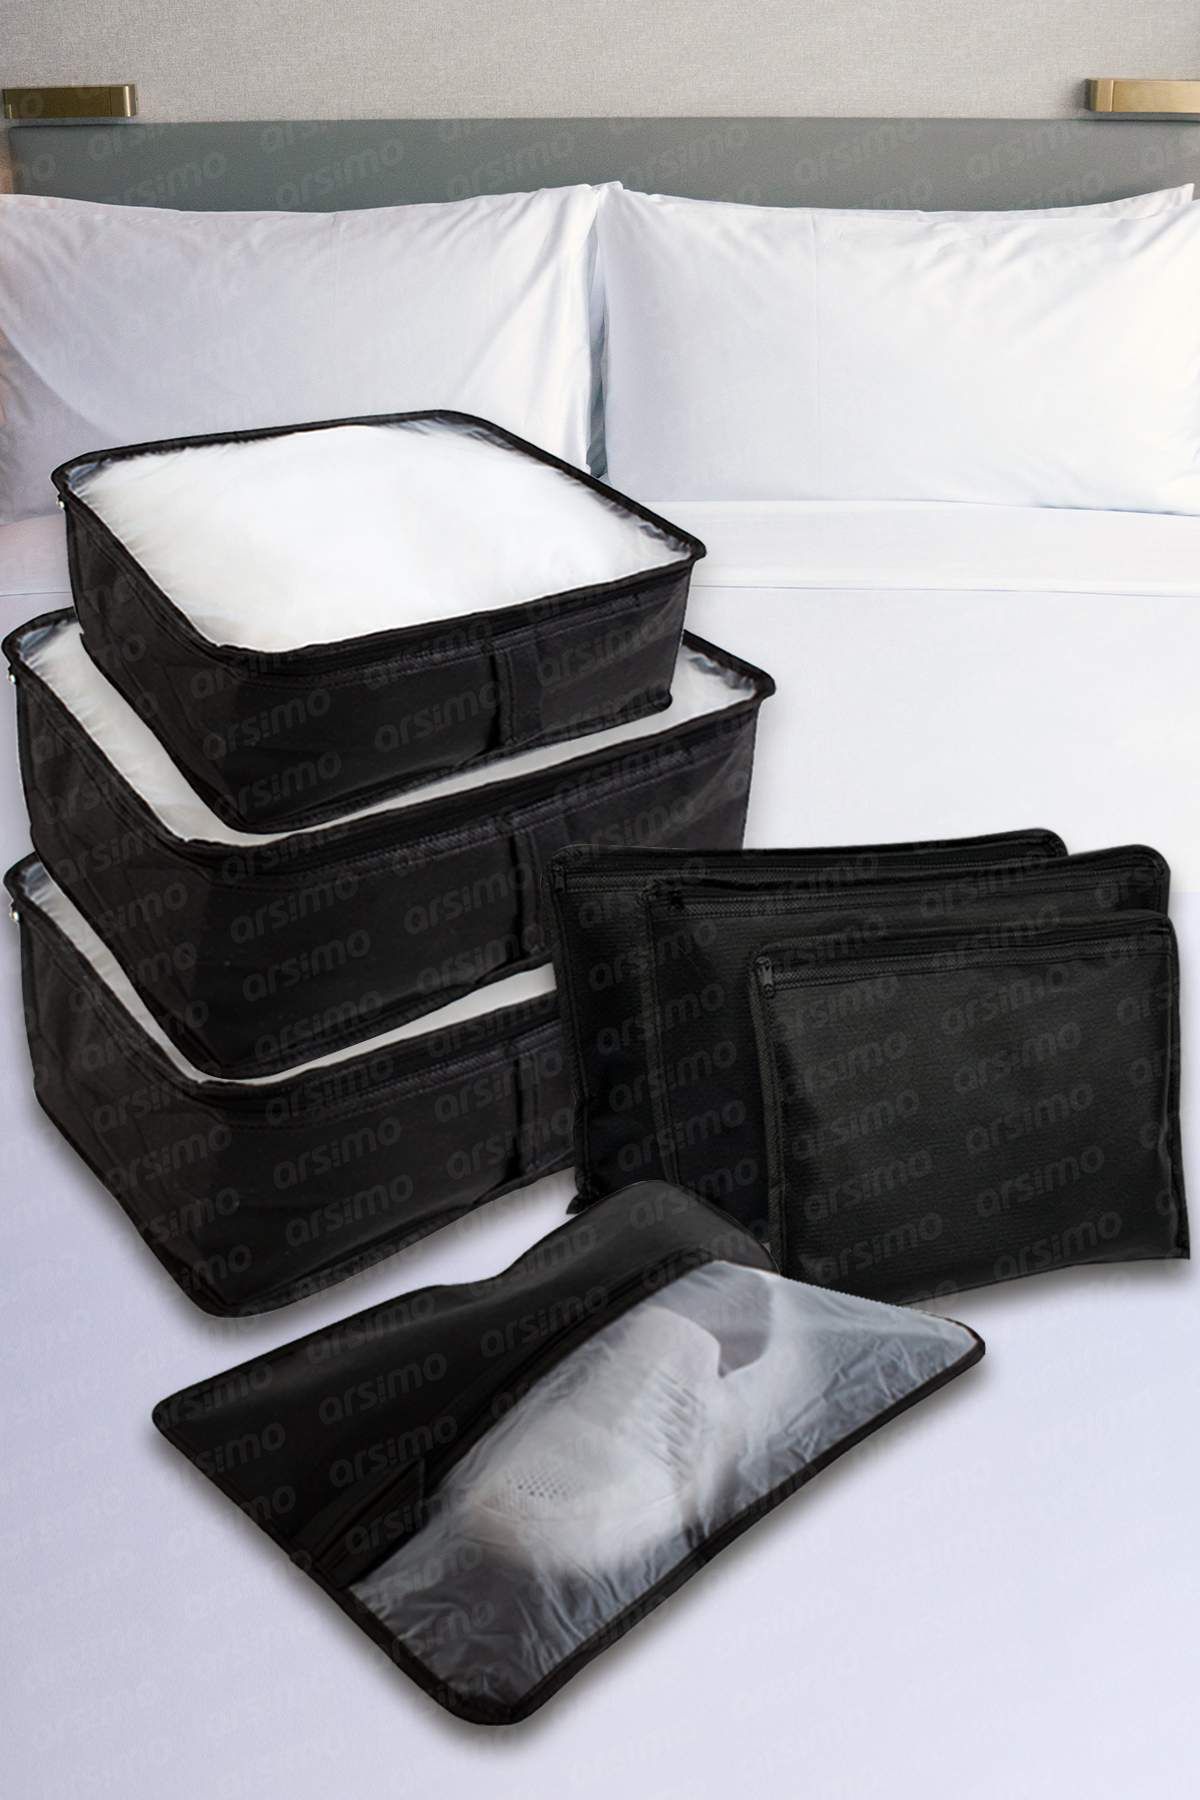 Arsimo Lüks 7 Parça Bavul Dolap Eşya Düzenleyici Pencereli Organizer Set Siyah